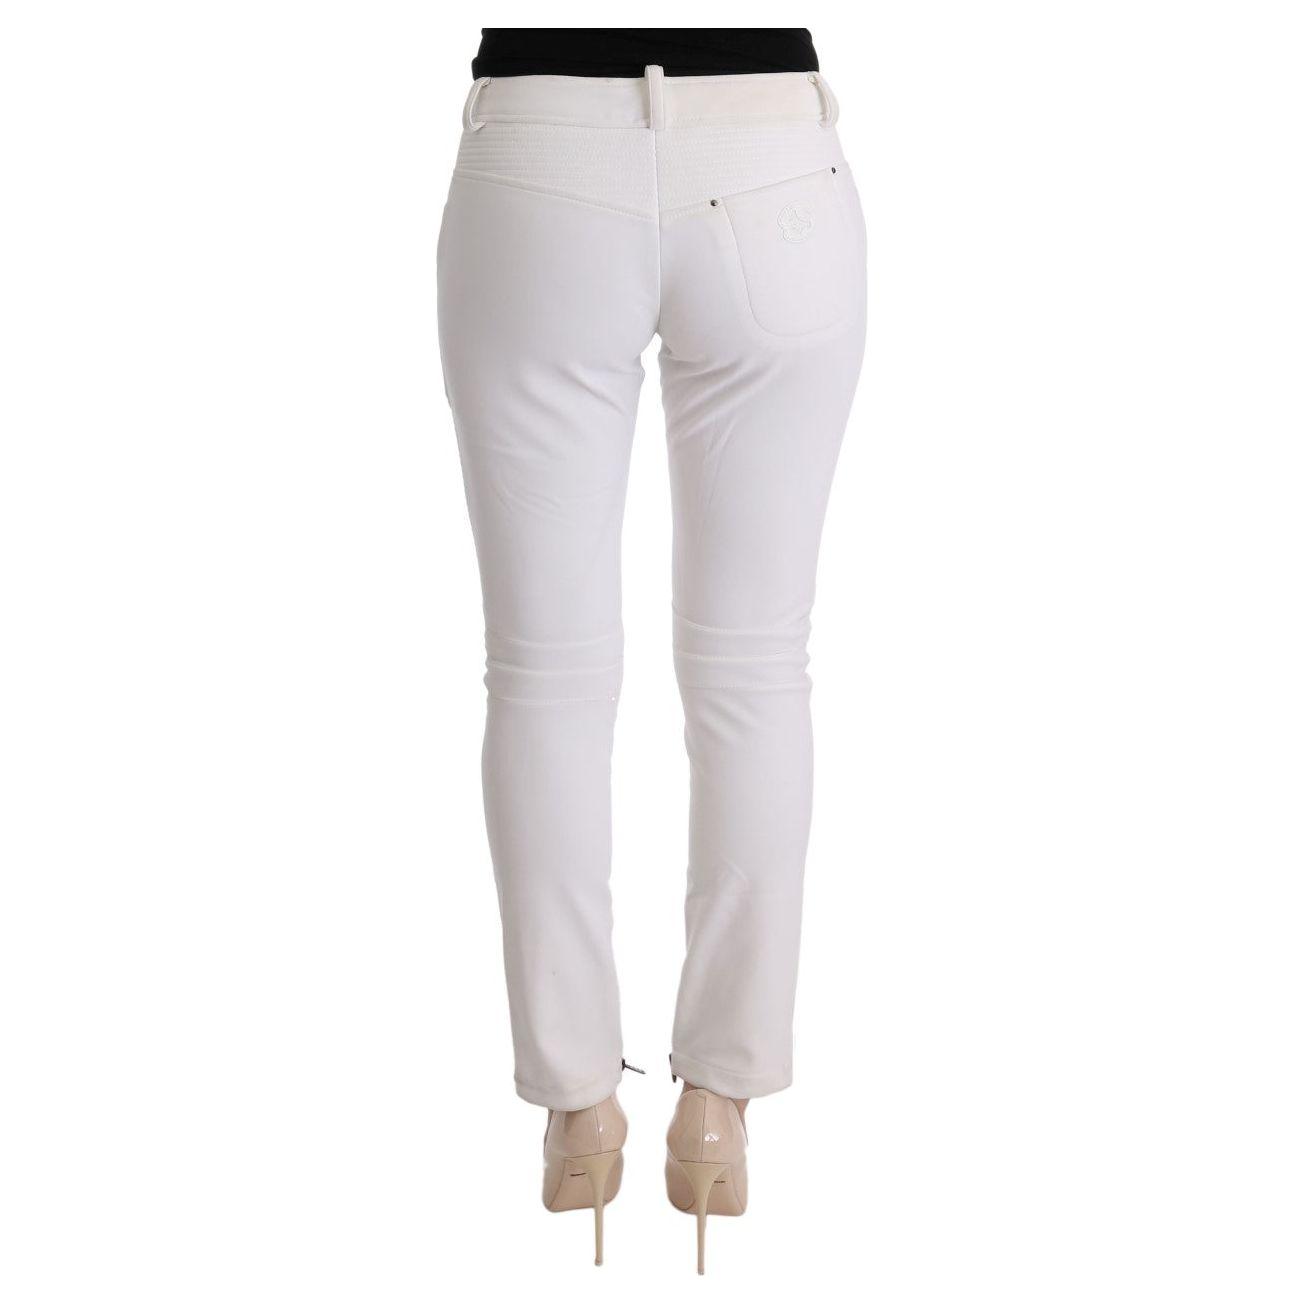 Ermanno Scervino Chic White Slim Fit Cotton Pants white-cotton-slim-fit-casual-pants-1 449212-white-cotton-slim-fit-casual-pants-2-2.jpg